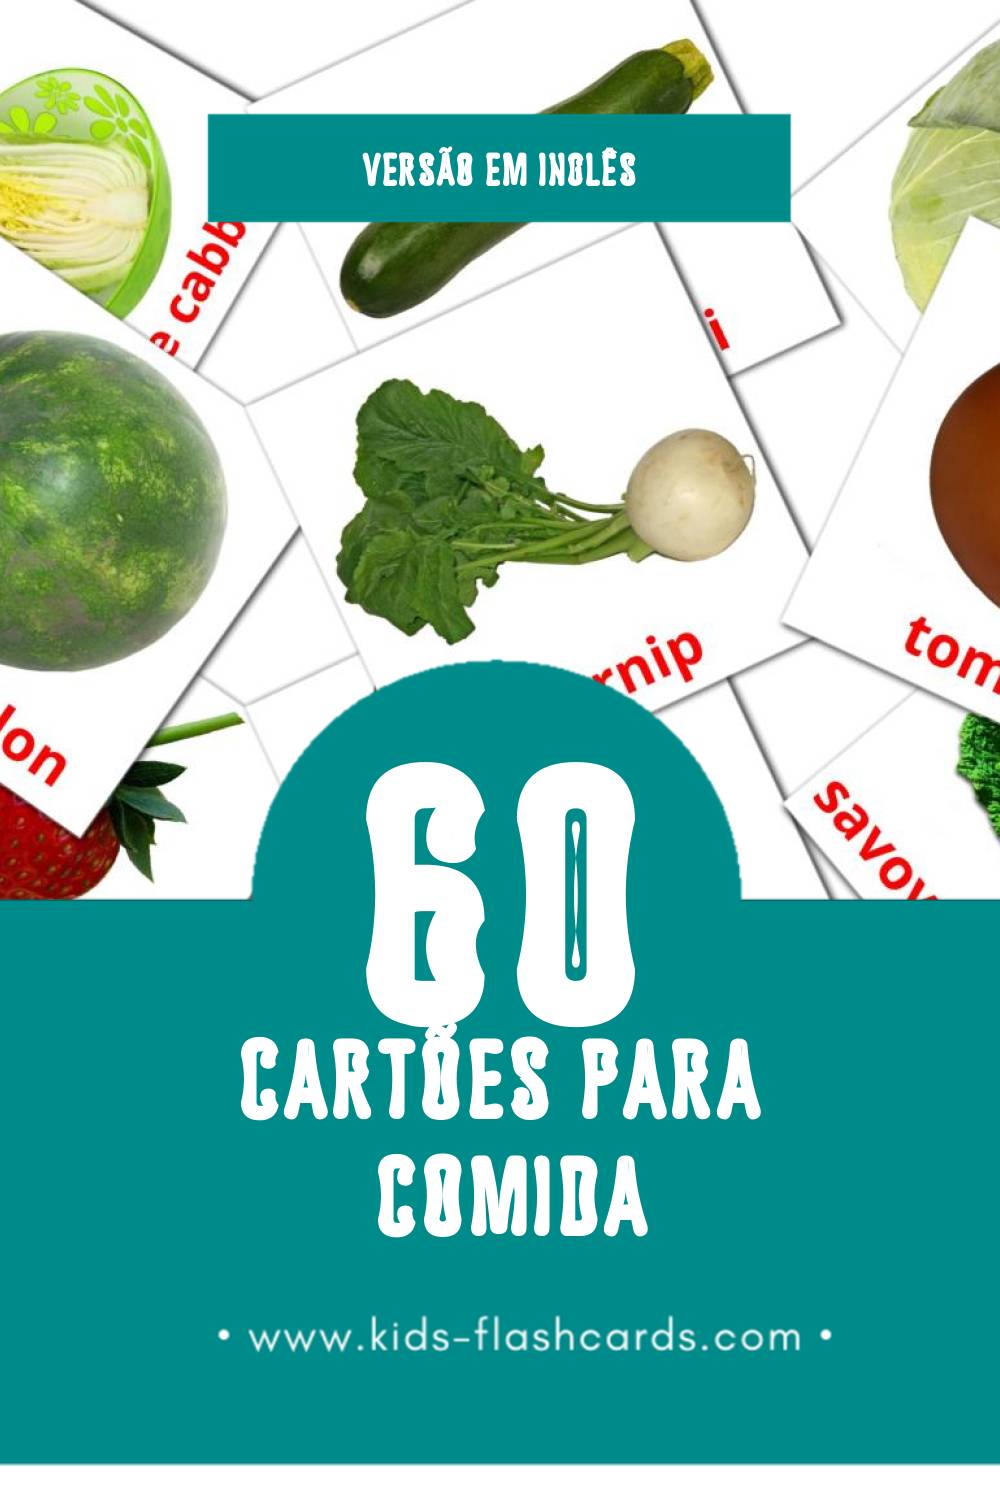 Flashcards de Food Visuais para Toddlers (60 cartões em Inglês)